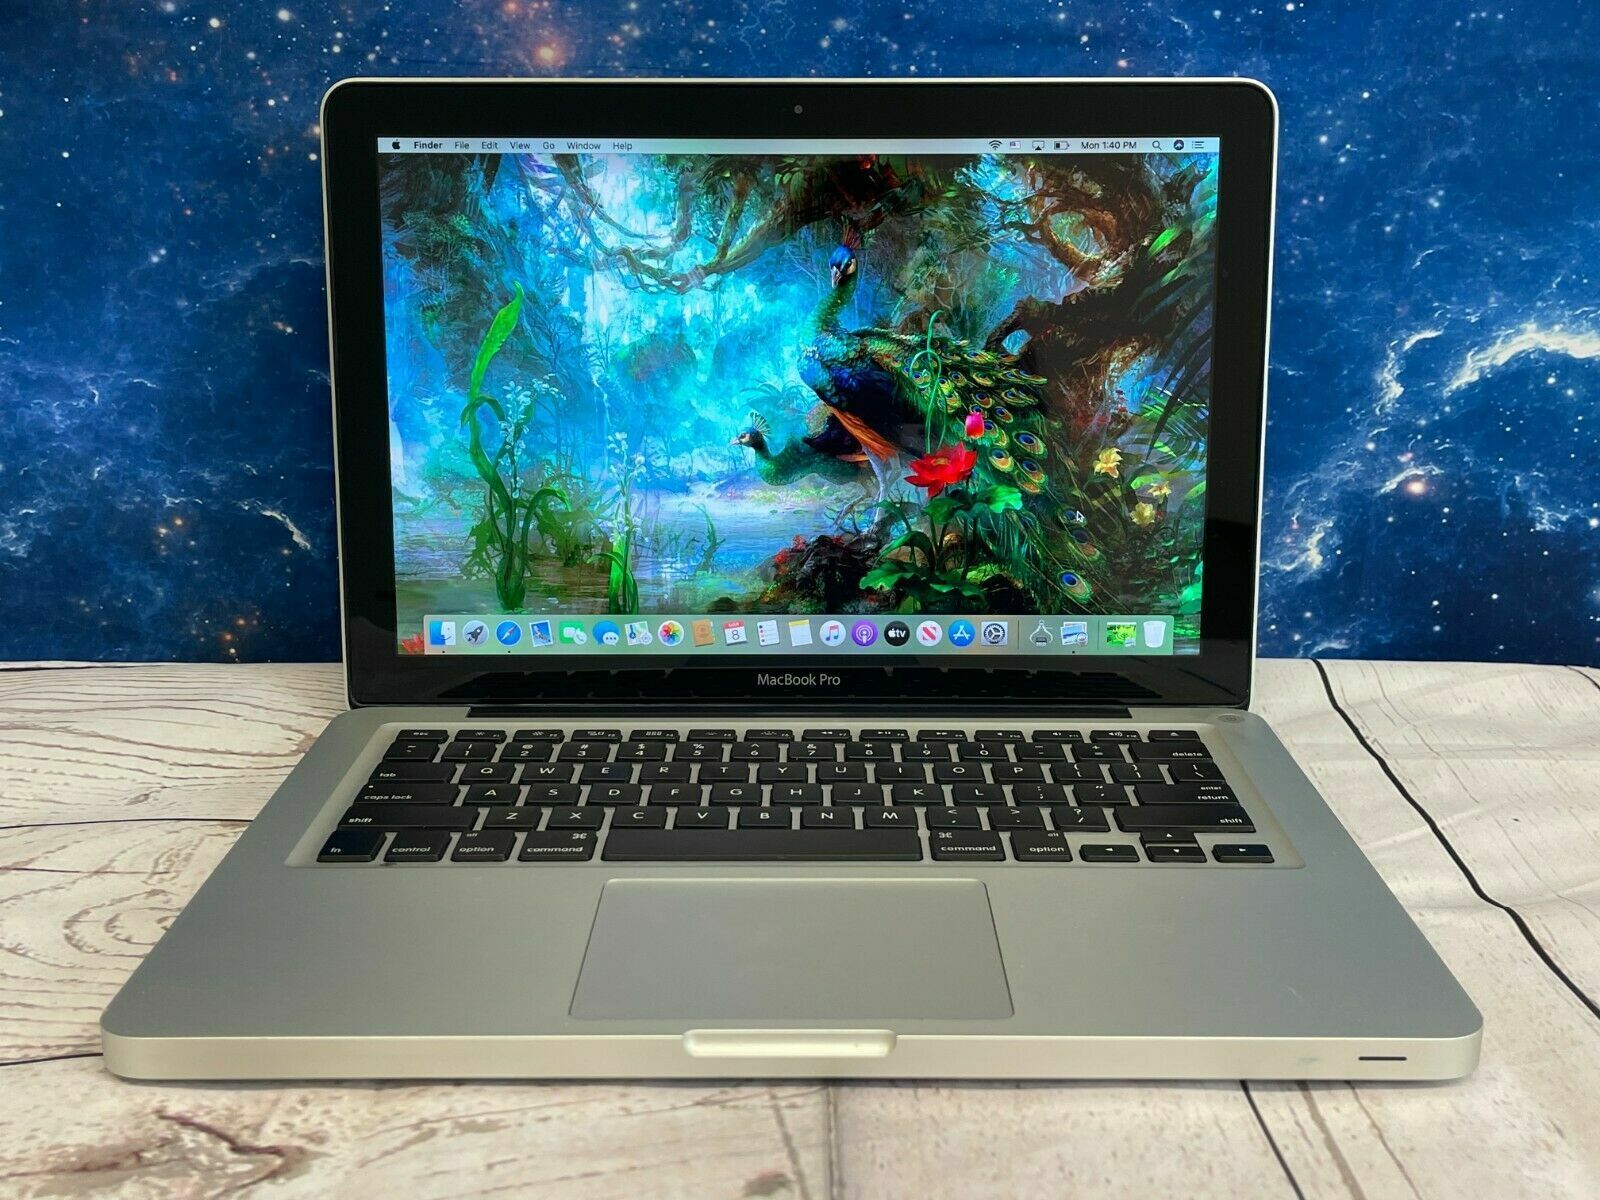 Apple Macbook Pro 13 Inch | i5 8GB RAM + 500GB HD | OS High Sierra | WARRANTY